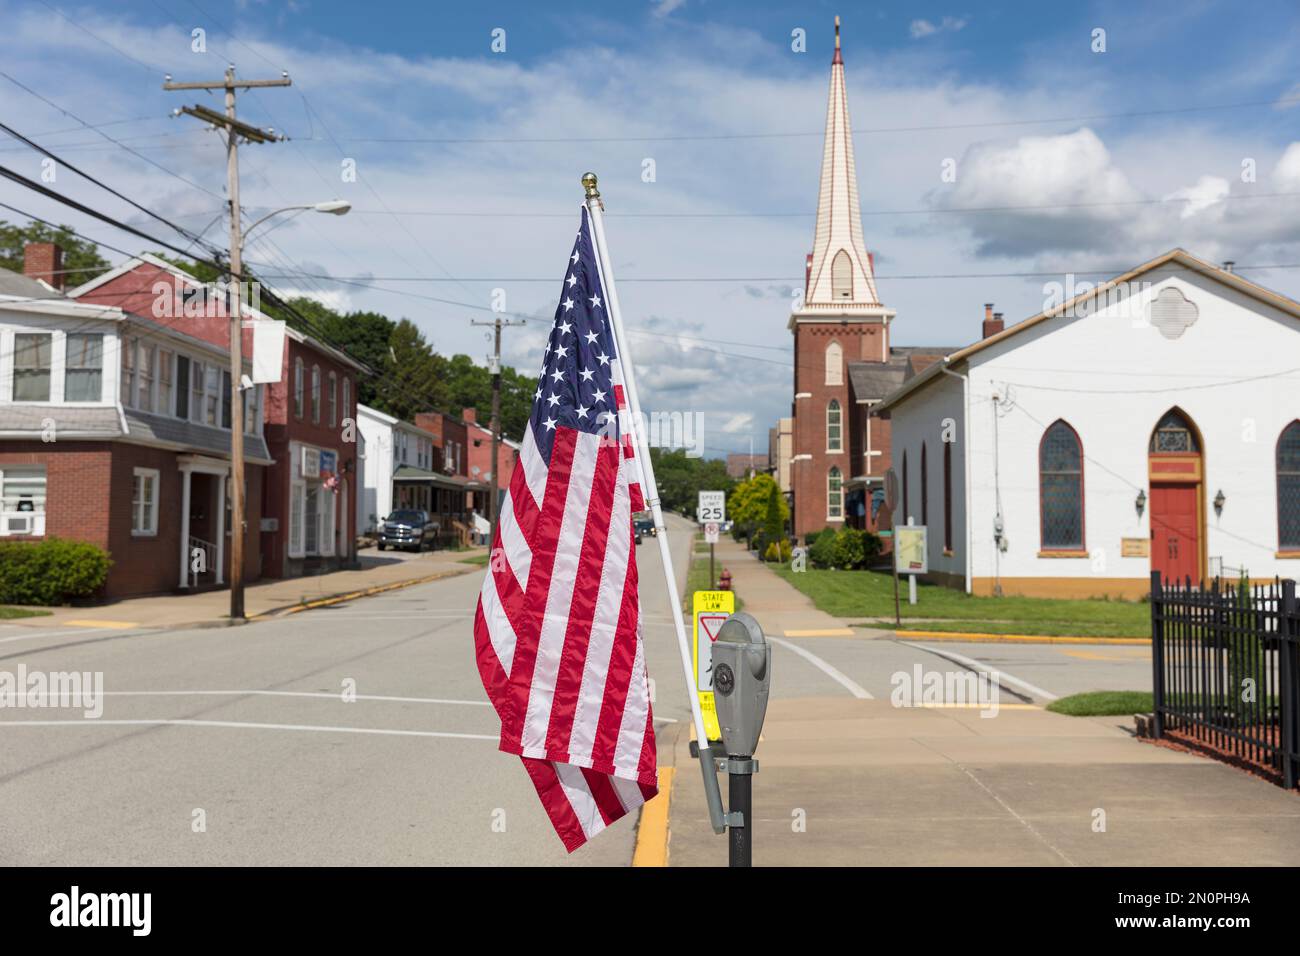 Bandiera americana che vola su una tranquilla strada principale con case e una chiesa. Foto Stock